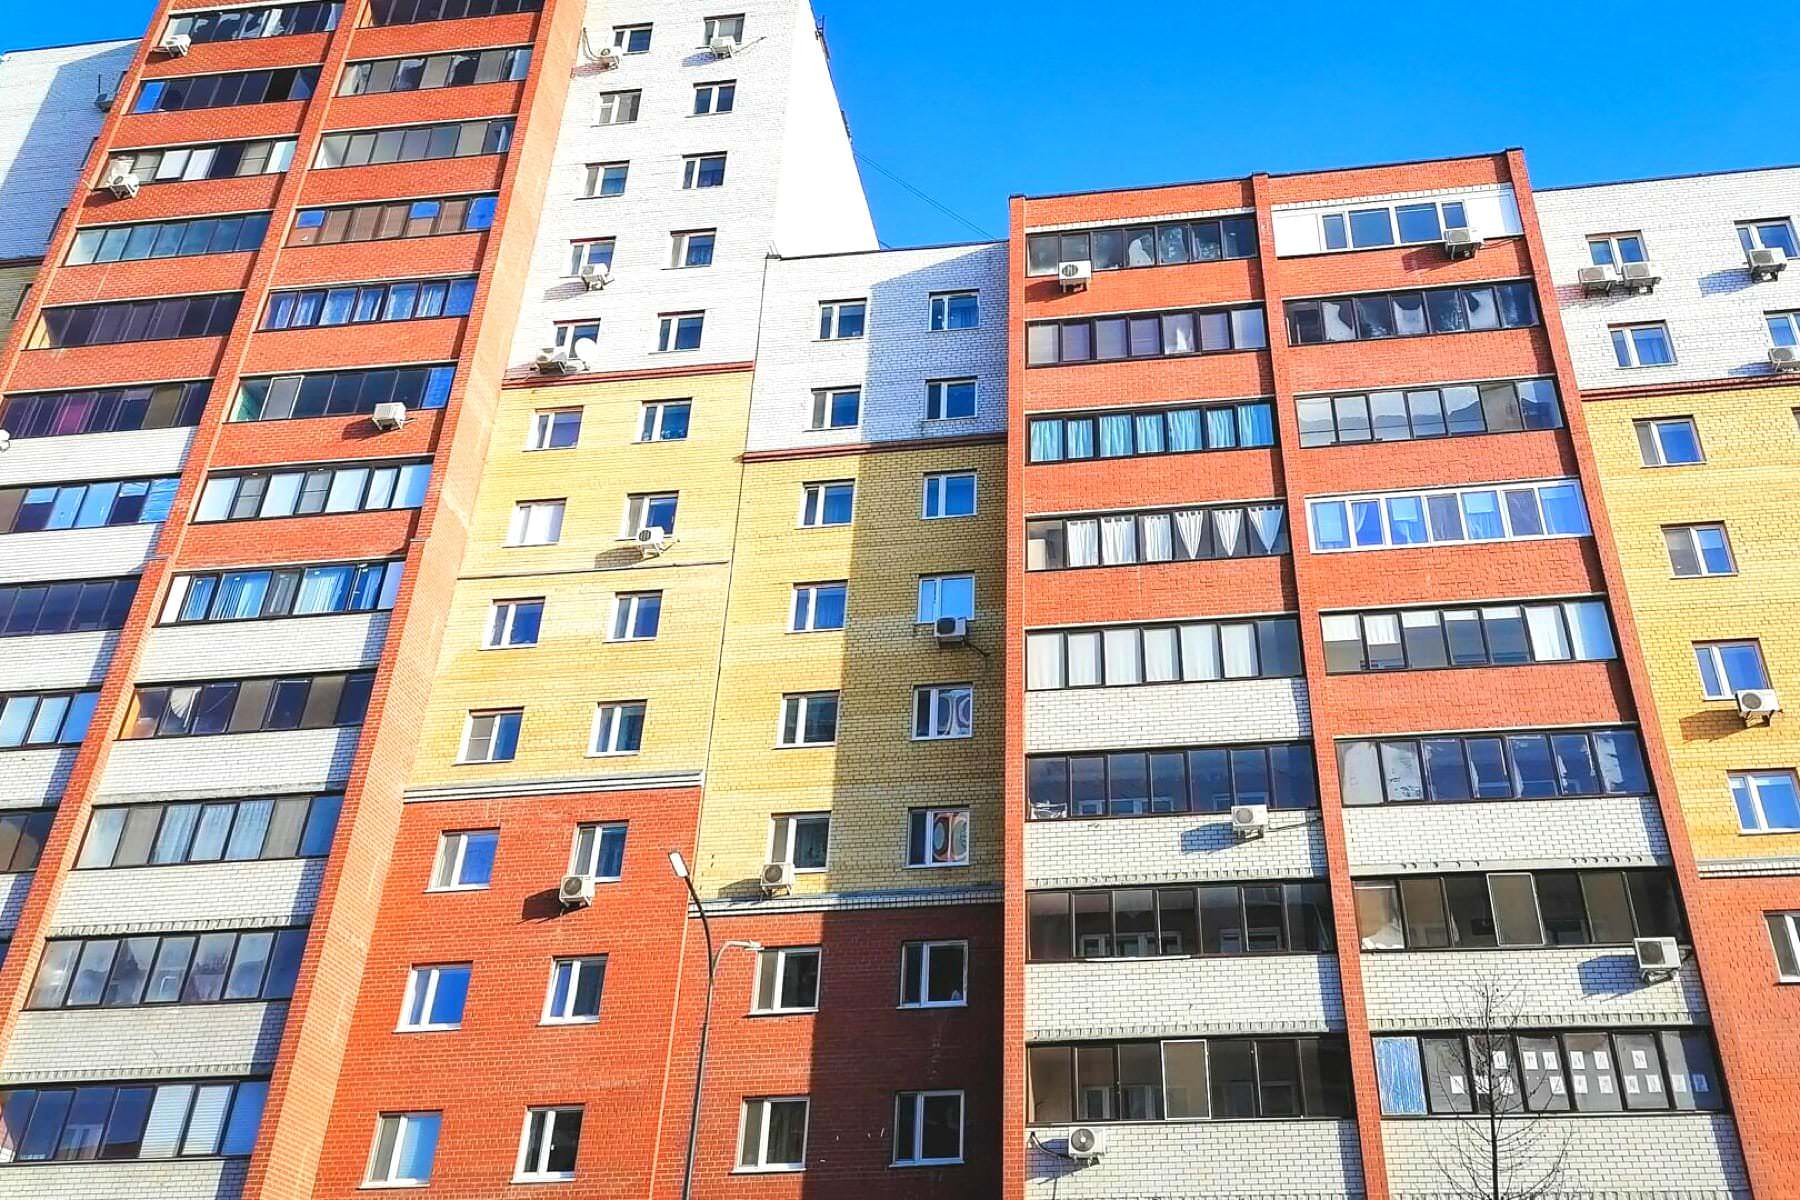 Цены на жилье будут принудительно снижены. Правительство России приняло новое решение